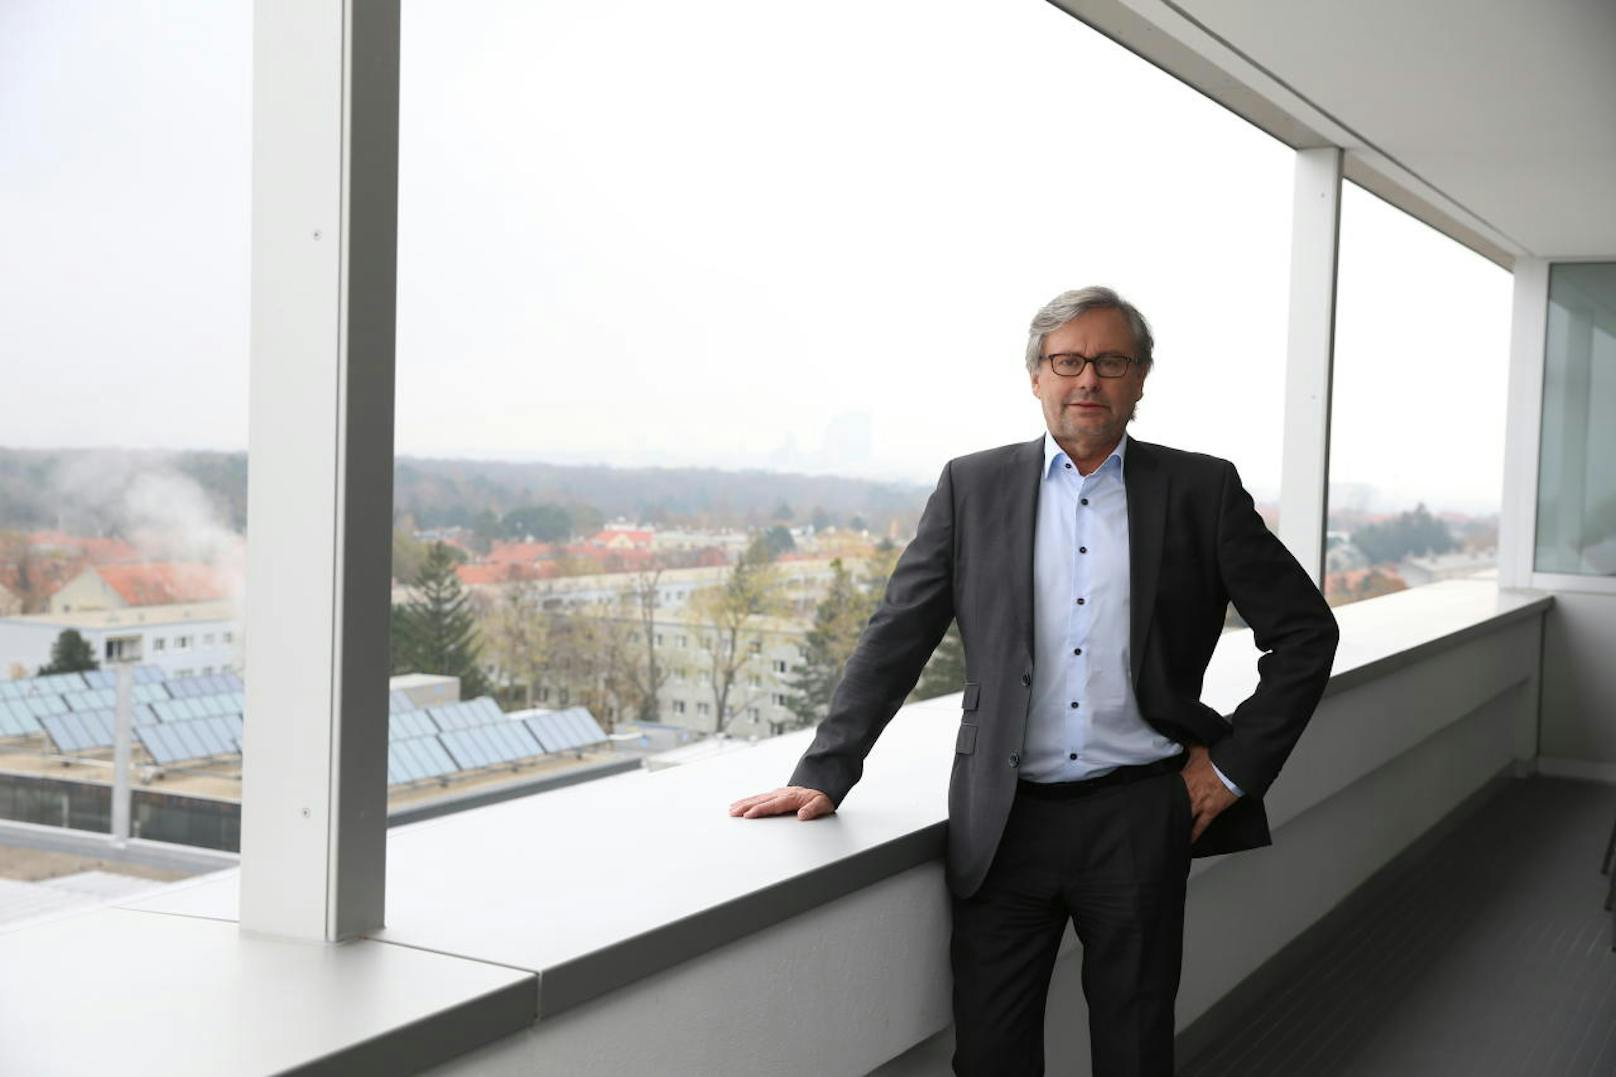 Alexander Wrabetz (58) wurde in Wien geboren. Er ist in einem FPÖ-nahen Haushalt aufgewachsen, selber aber Mitglied der SPÖ. Seit 2006 ist er ORF-Generaldirekor.